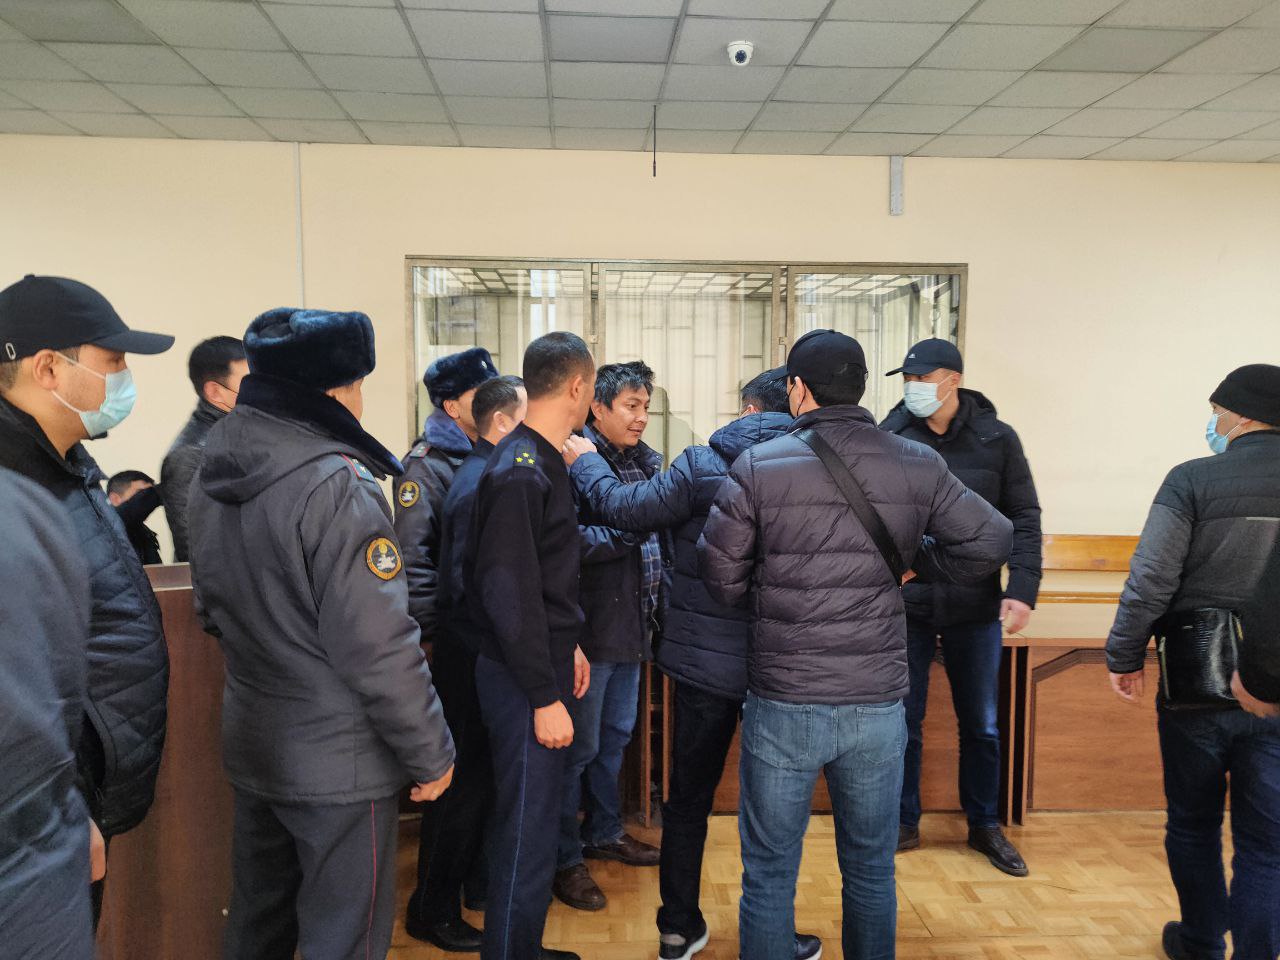 Городской суд Бишкека выдворил Болота Темирова из страны, как иностранного гражданина